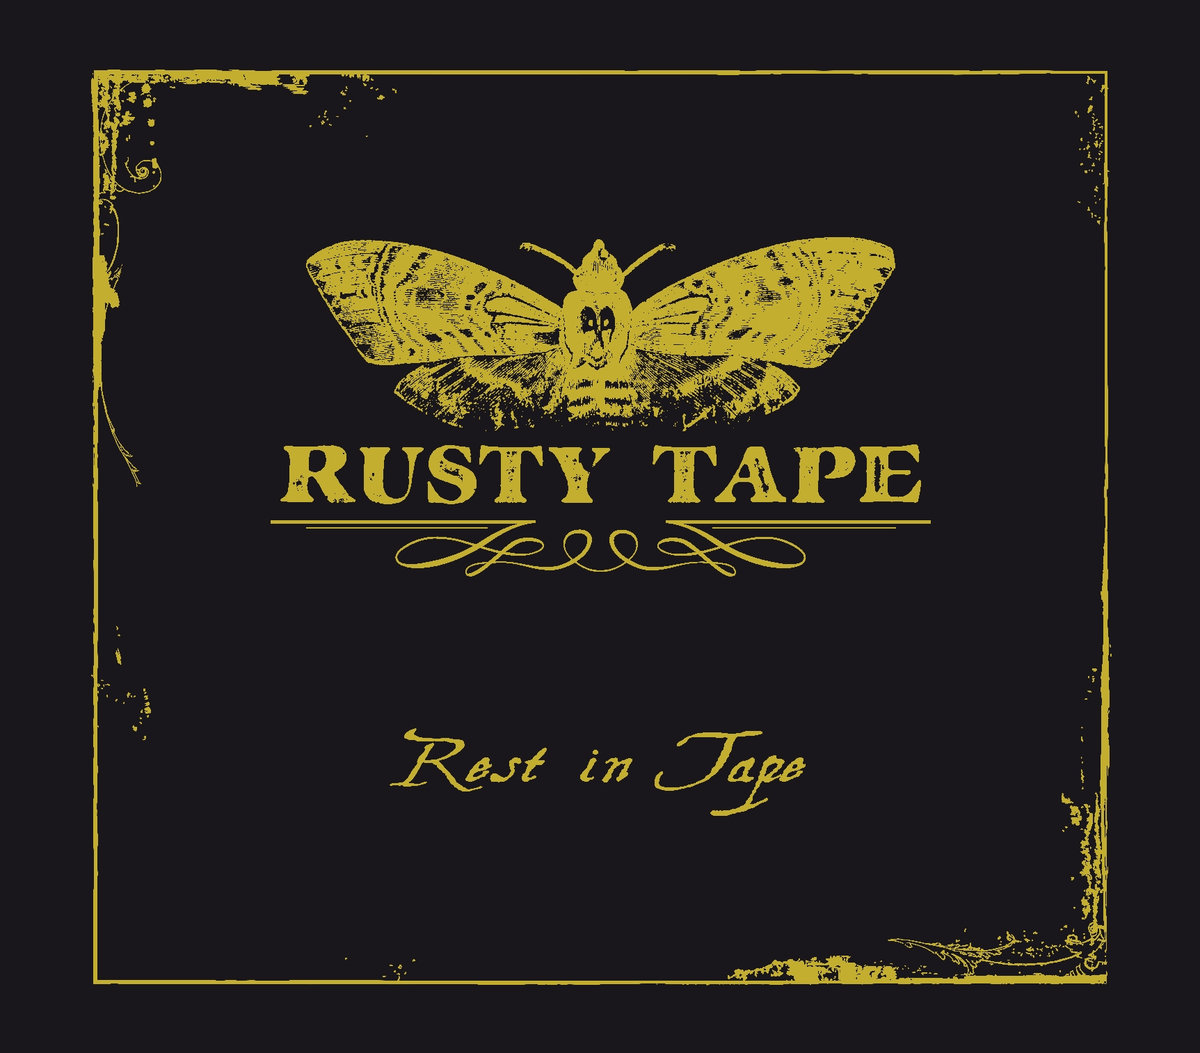 rustytape_ep2014.jpg